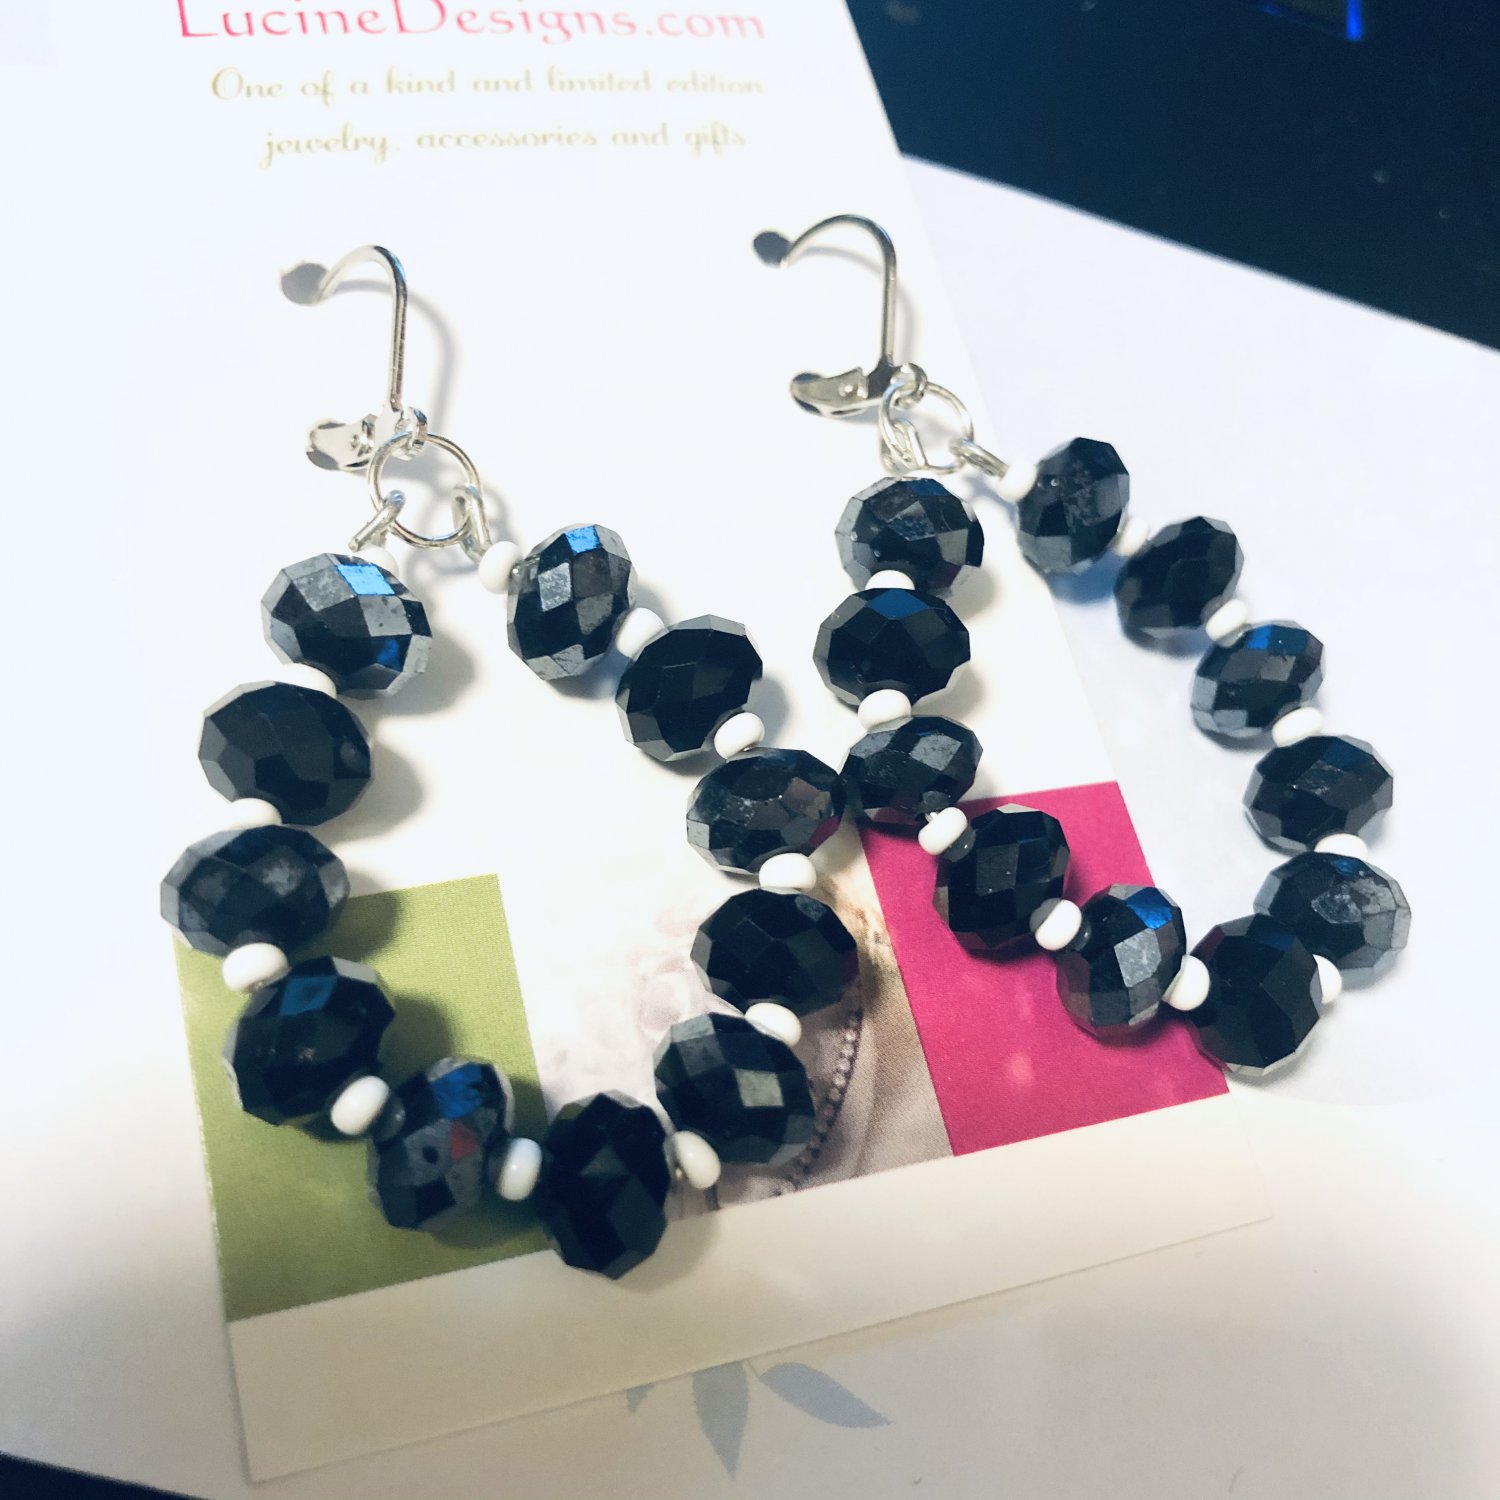 Black beaded earrings, #3592E, hoop earrings, BFF gift ideas